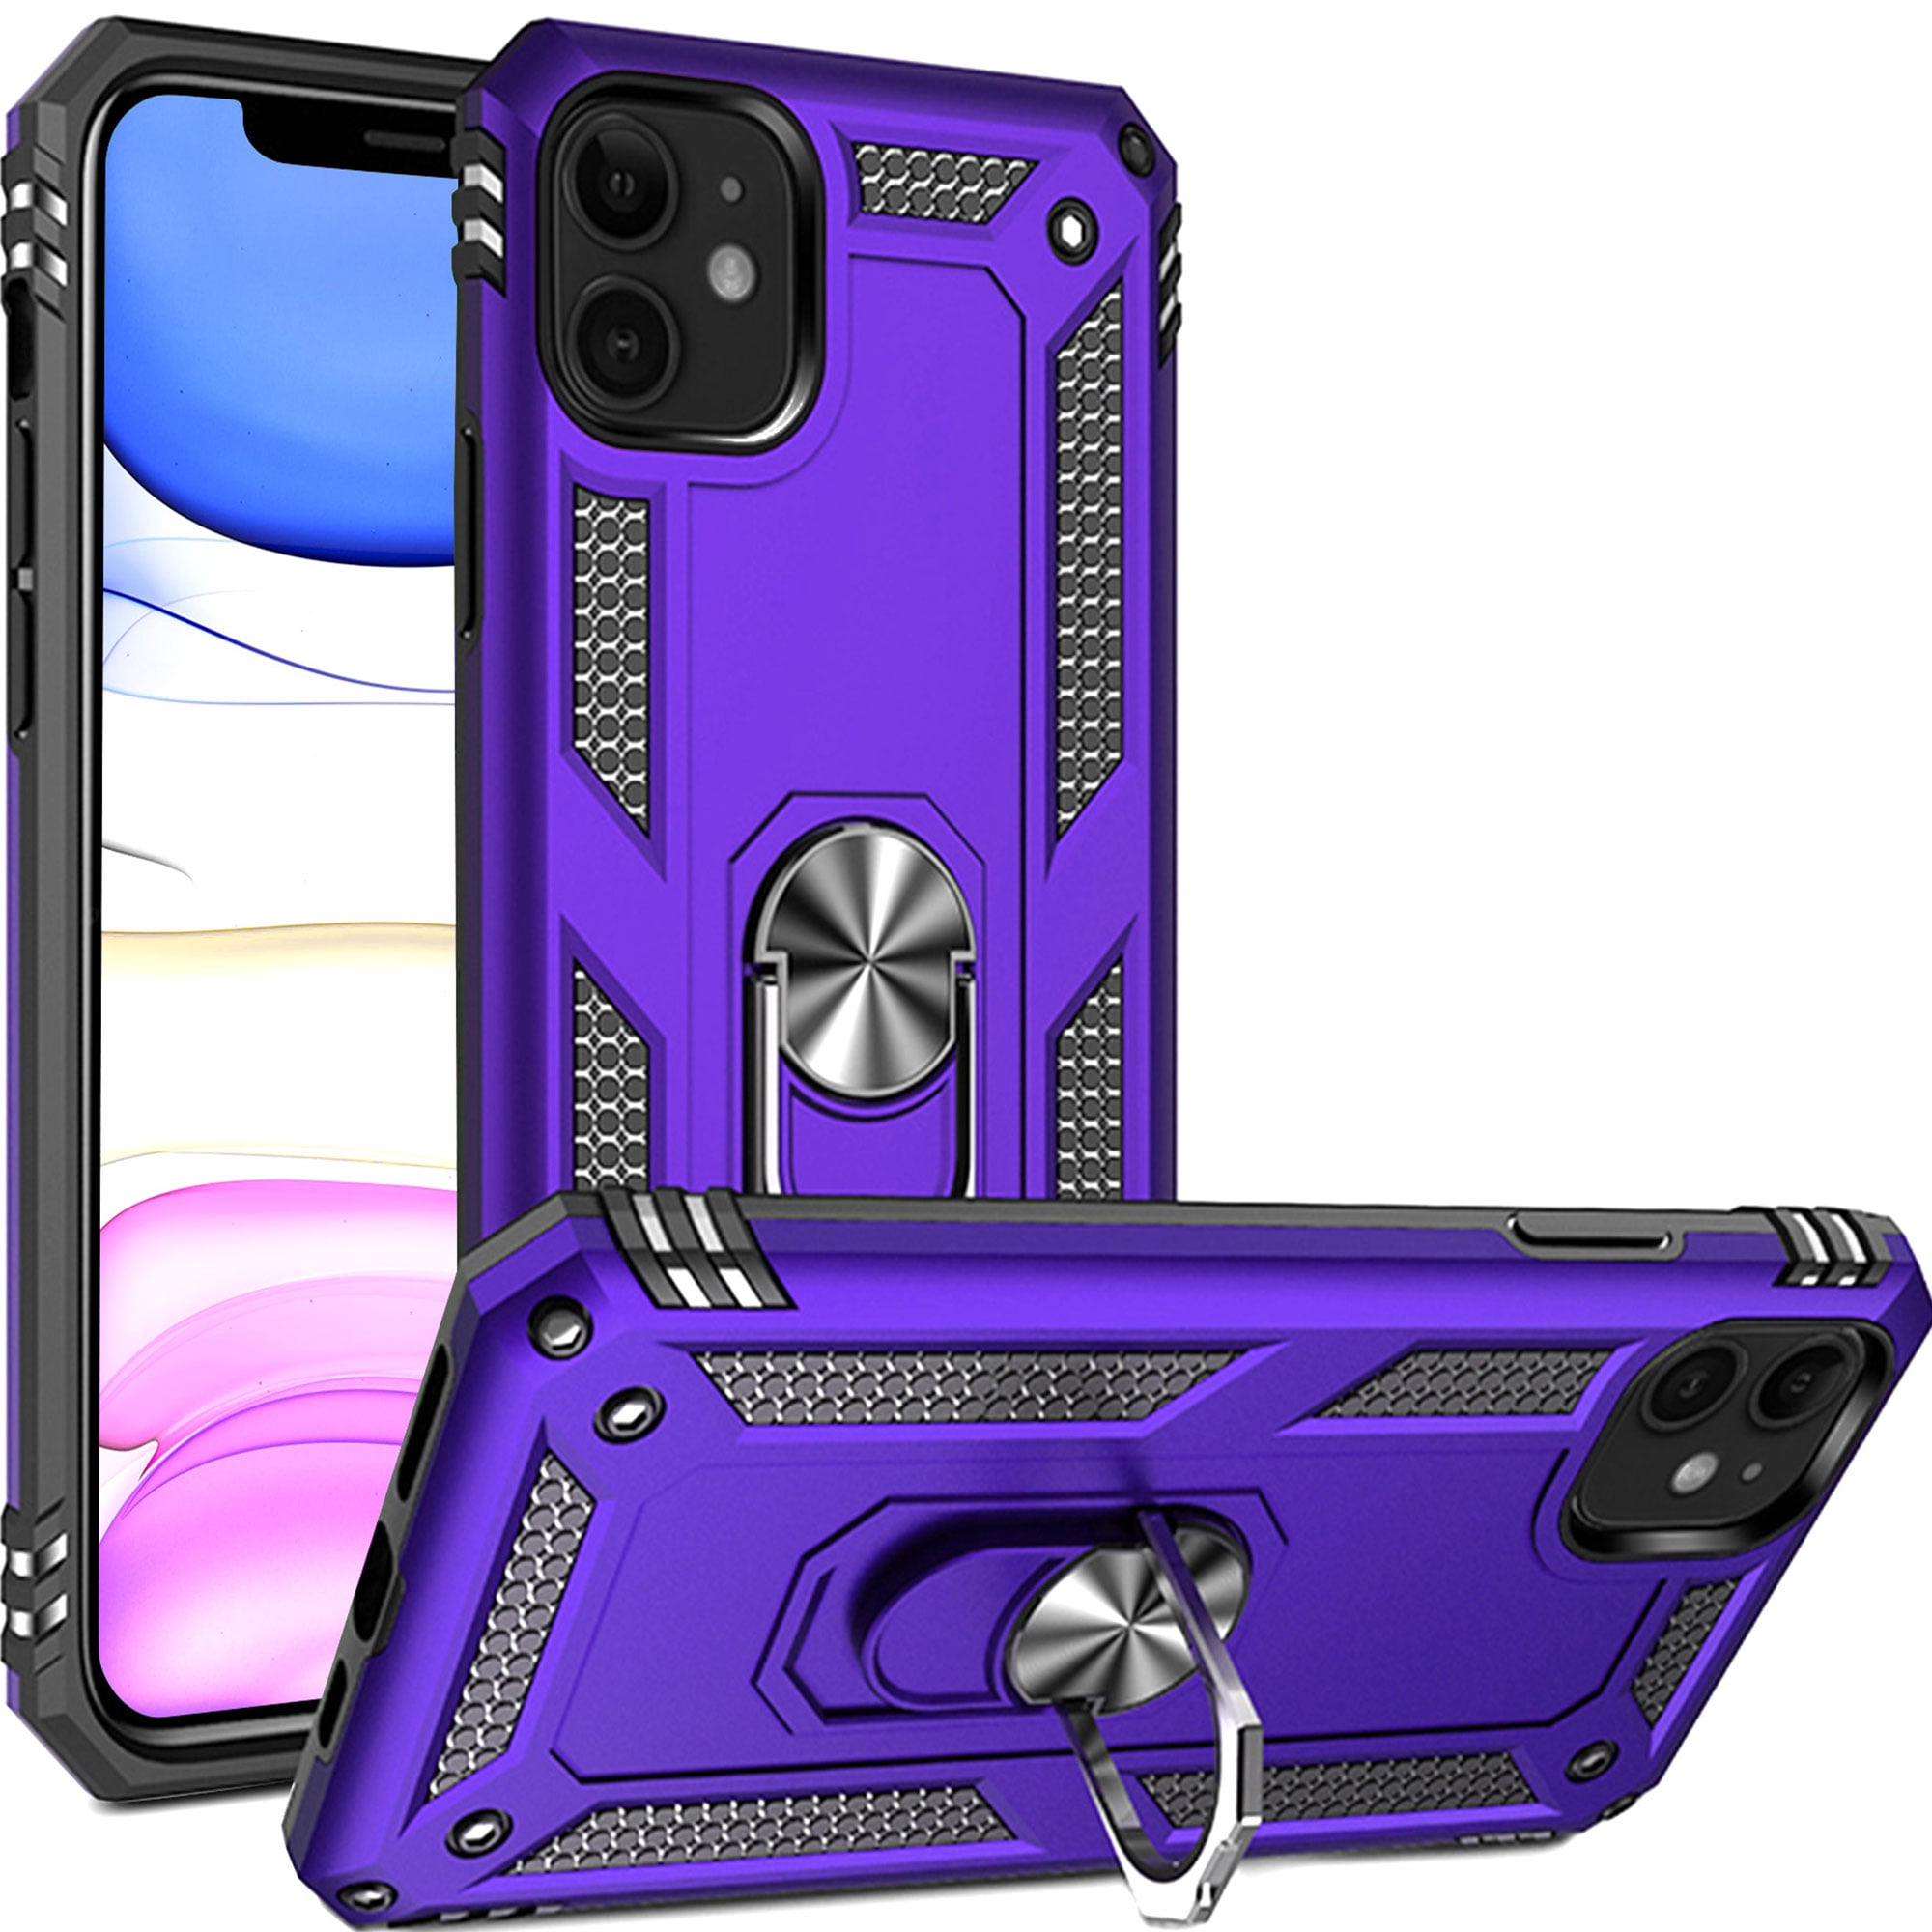 Purple iphone 11 case 💜  Iphone cases, Iphone, Case